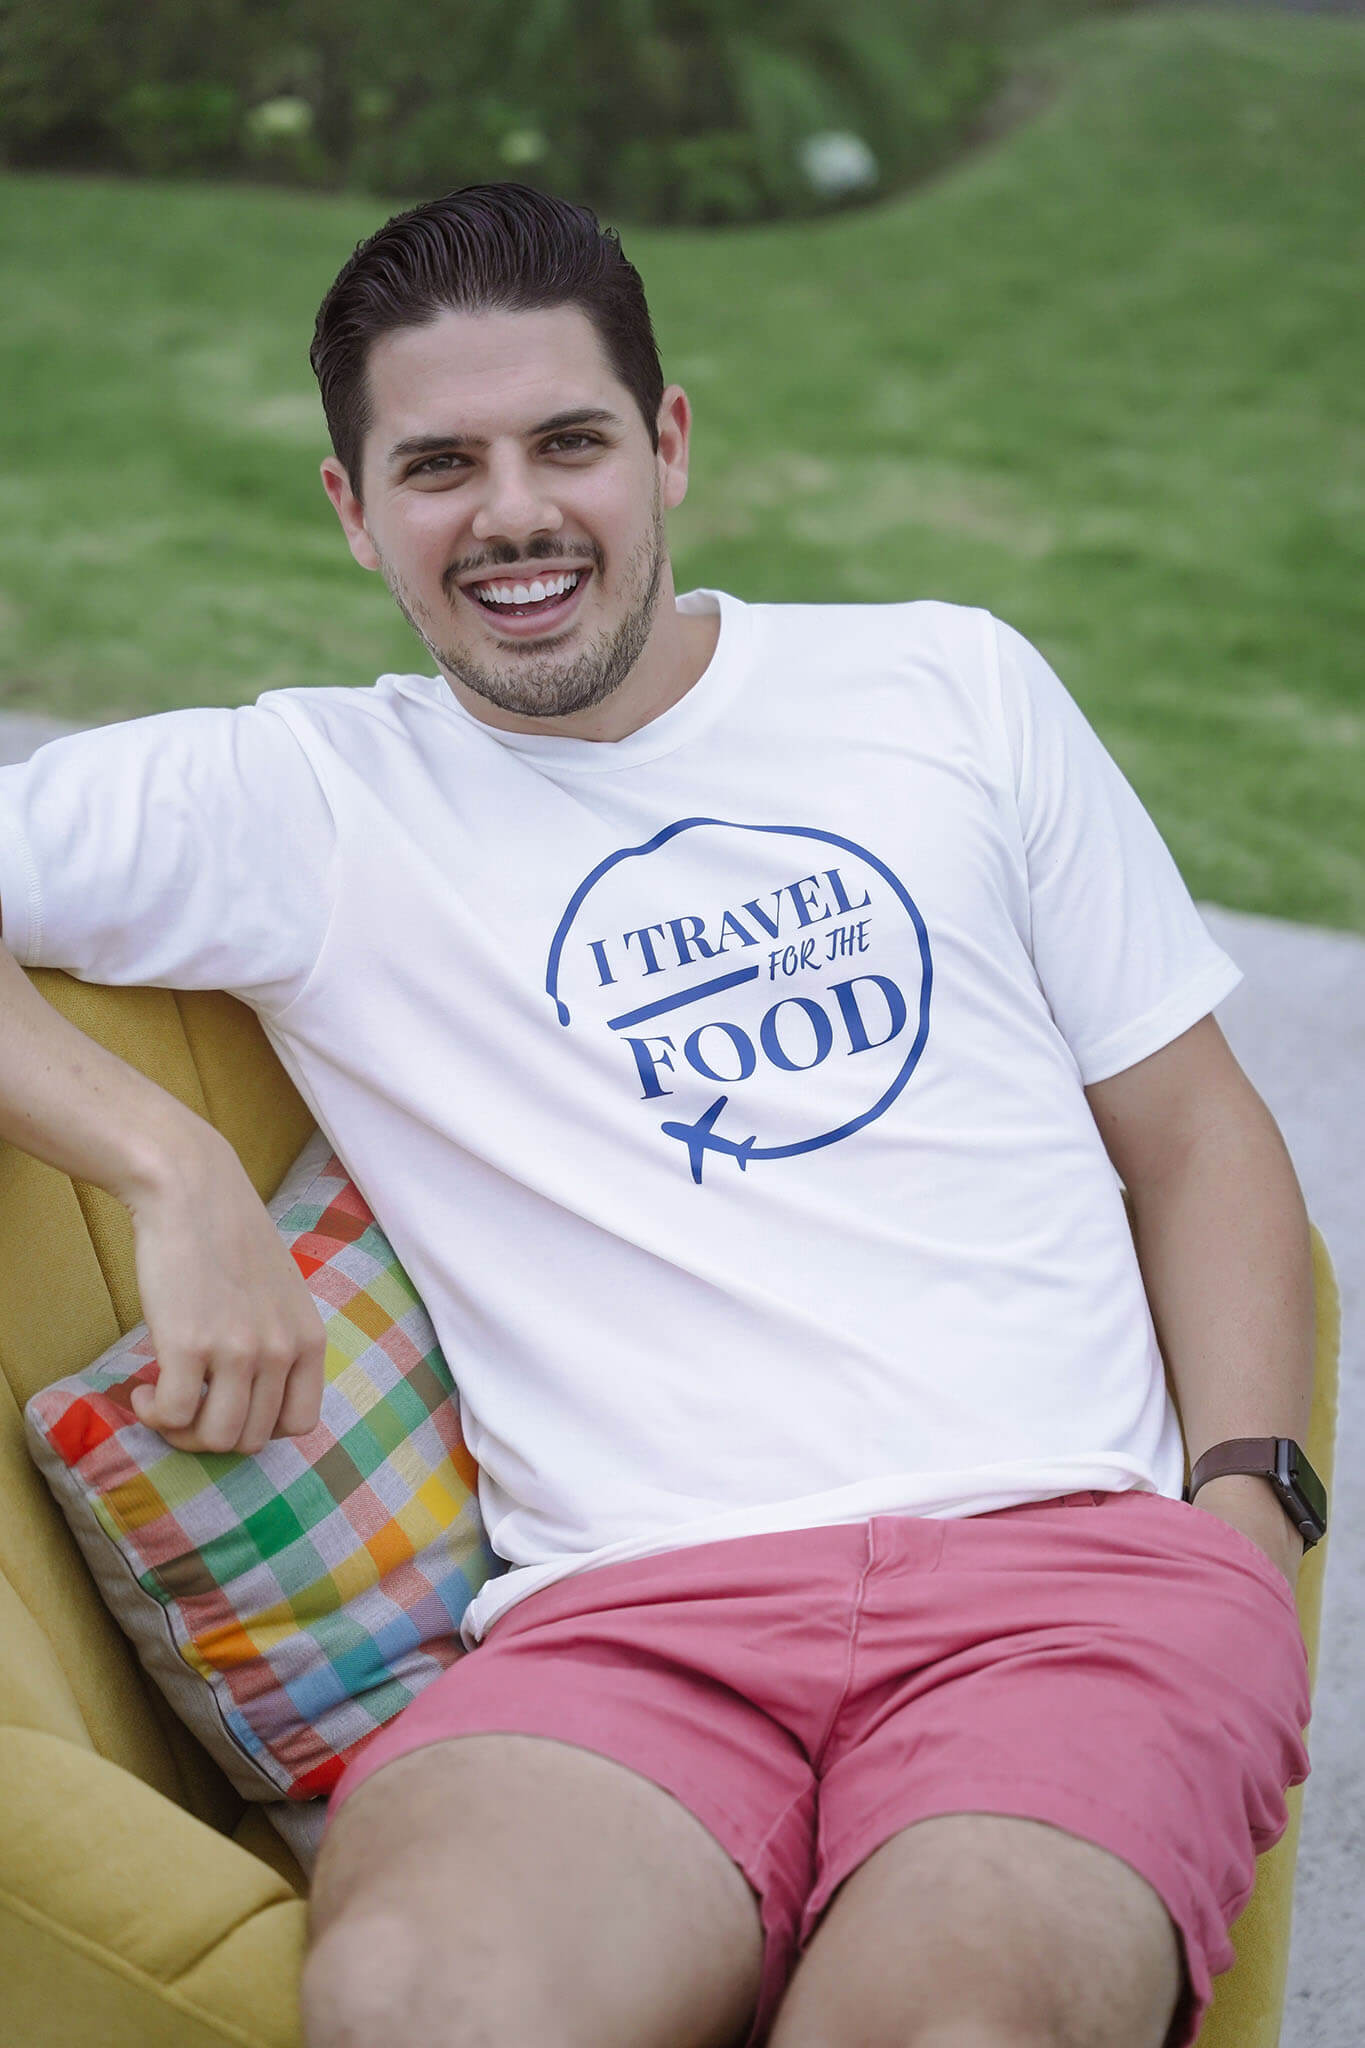 Camiseta de Hombre «Raised on Gallo Pinto y Picadillo» – Chef Sophia